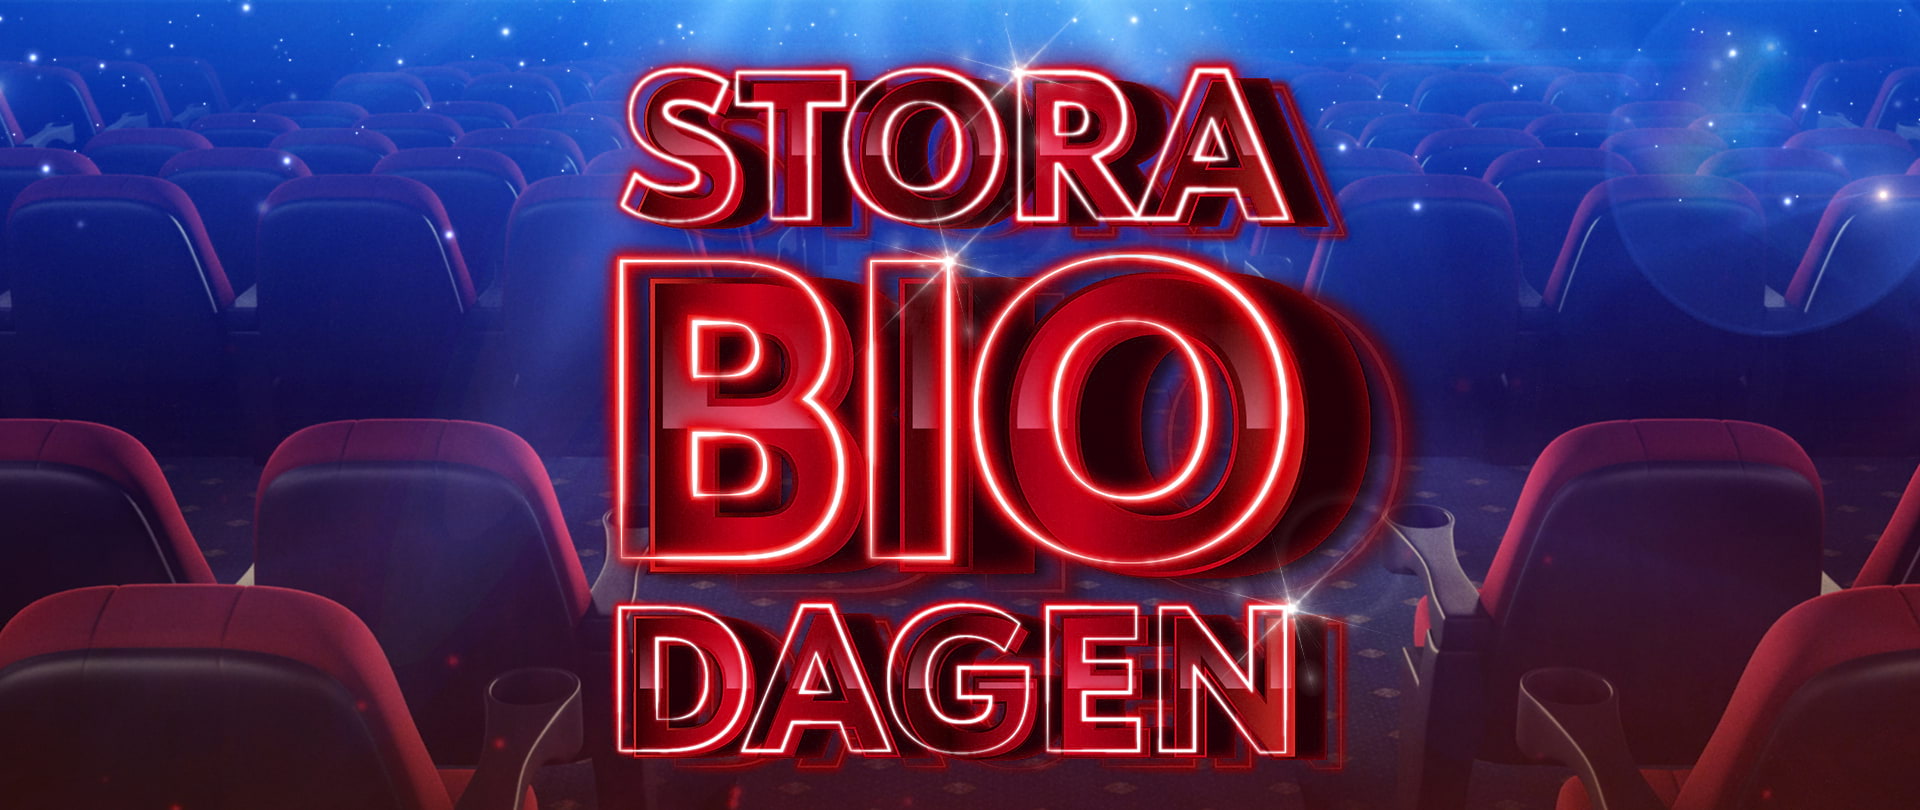 Biofest i hela Sverige – halva priset på filmer